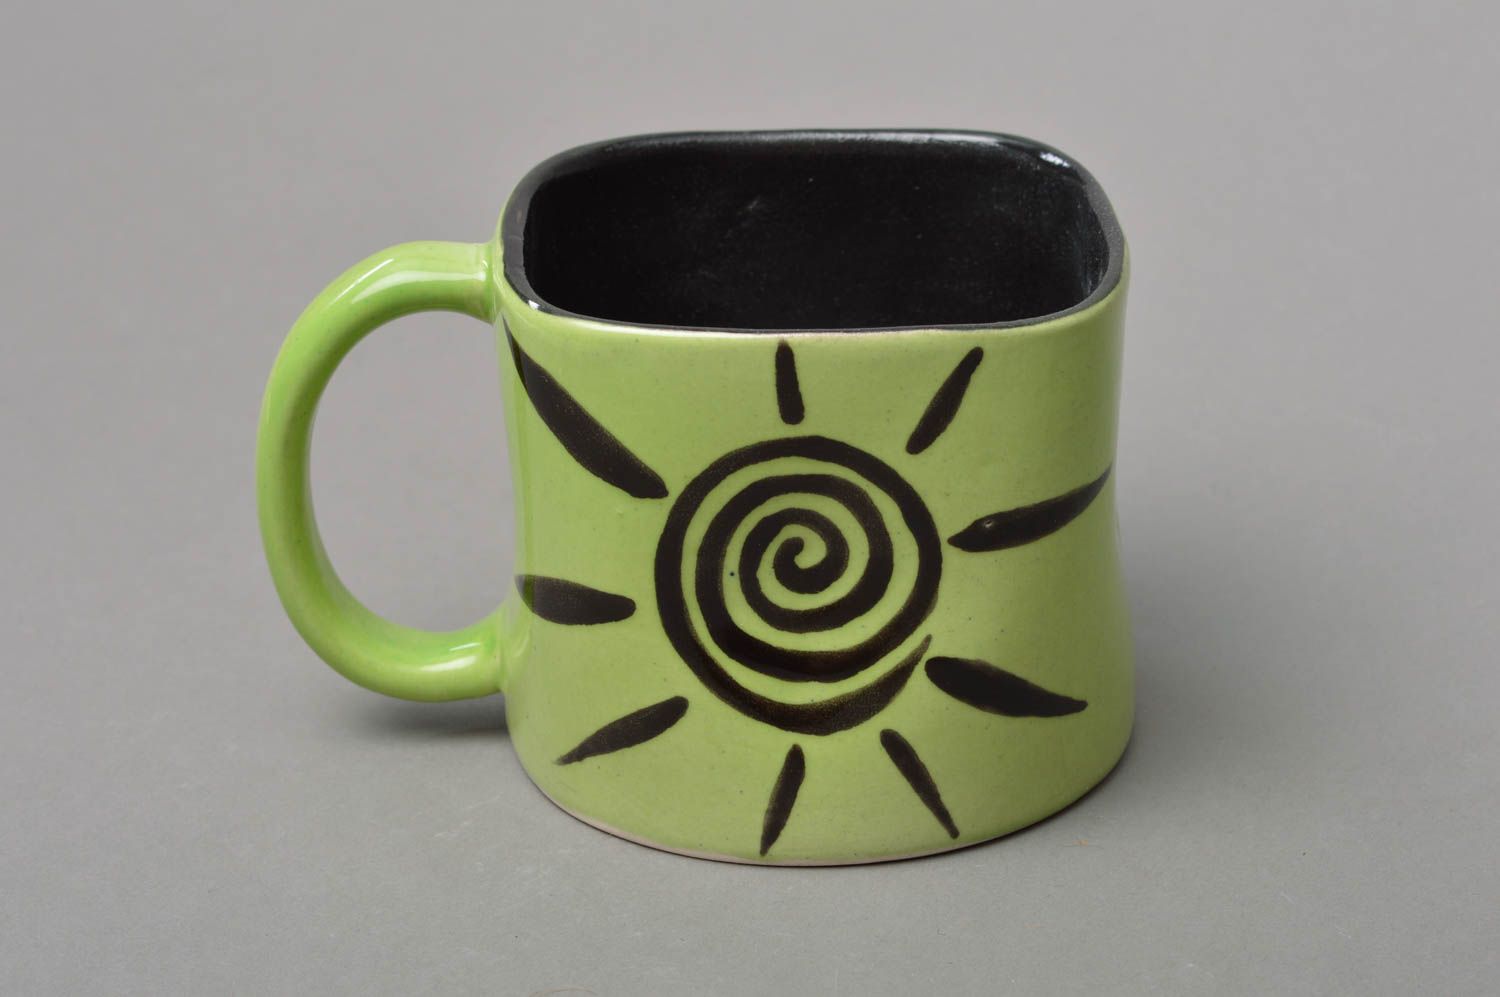 Handmade Porzellan Tasse mit Bemalung für Kaffee oder Tee in Grün und Schwarz foto 1